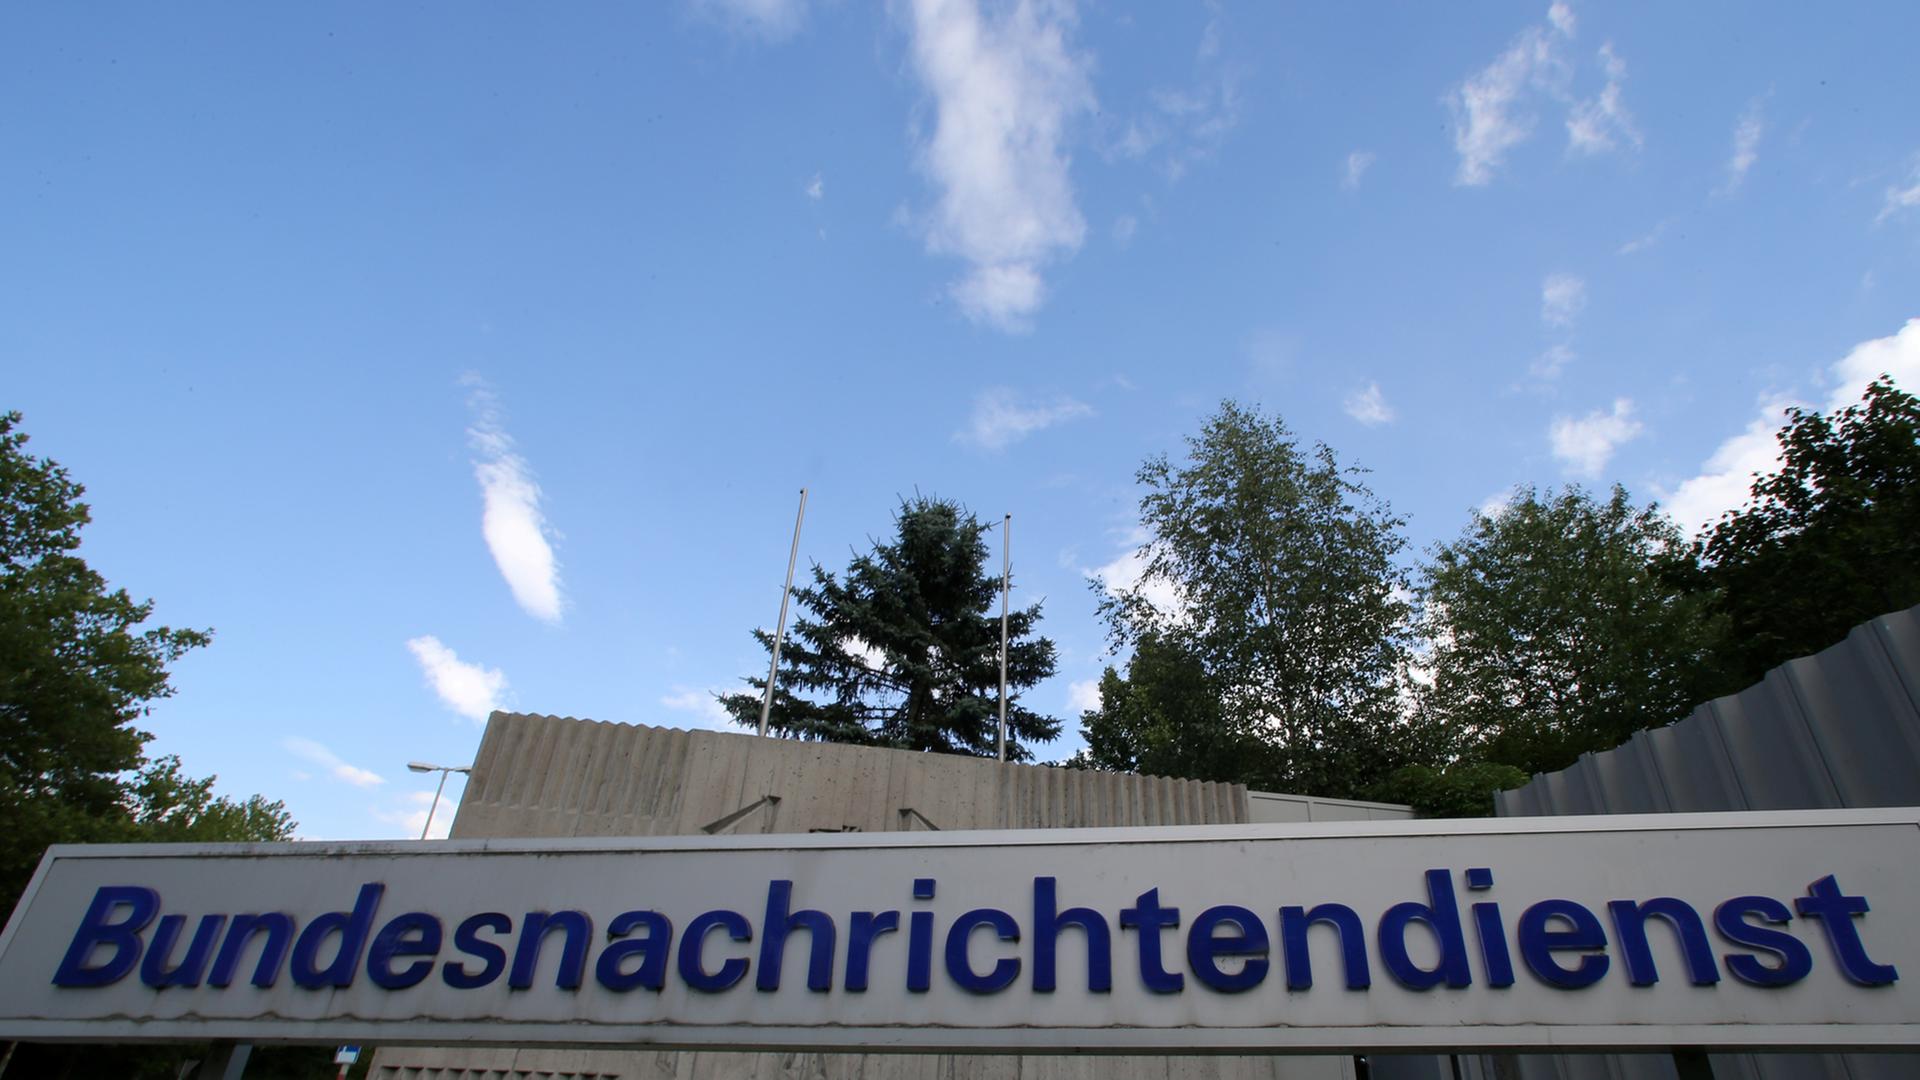 Graues Schild mit blauer Aufschrift "Bundesnachrichtendienst" vor einer grauen Mauer und blauem Himmel